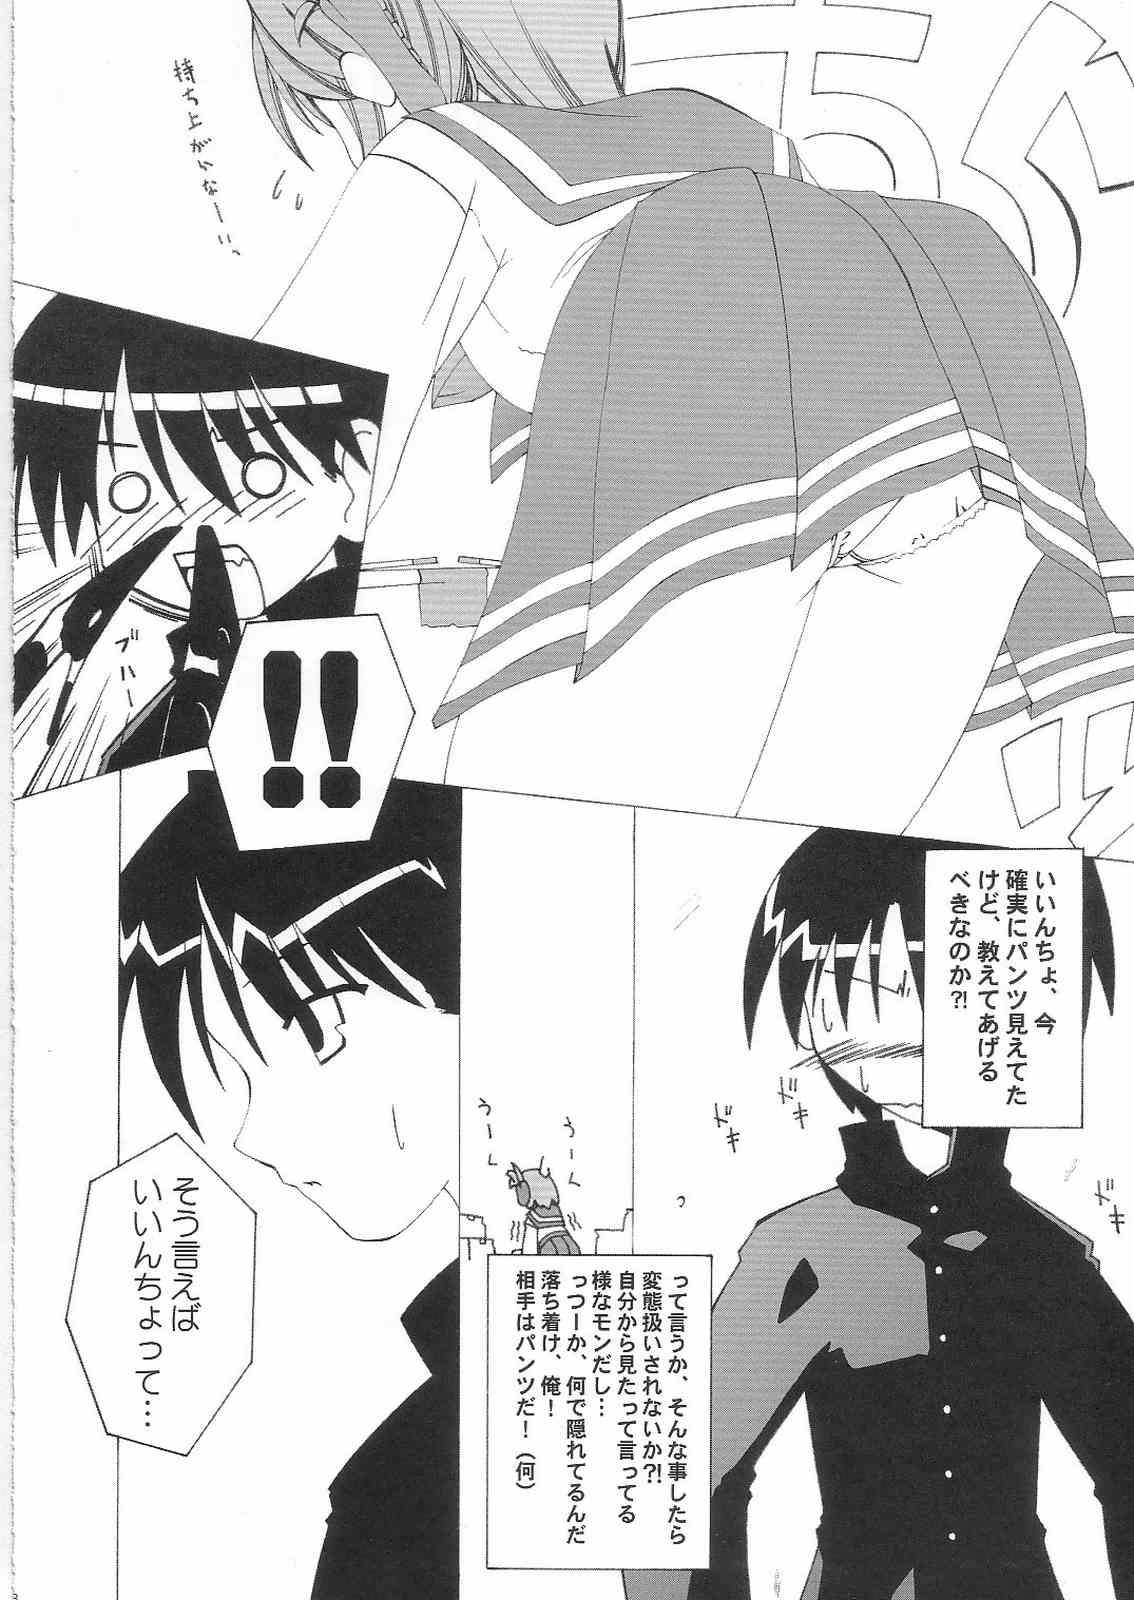 Virginity Kimi wo Soba ni Kanjiru Tabi ni Shiawase ni Nareru - Toheart2 Selfie - Page 7